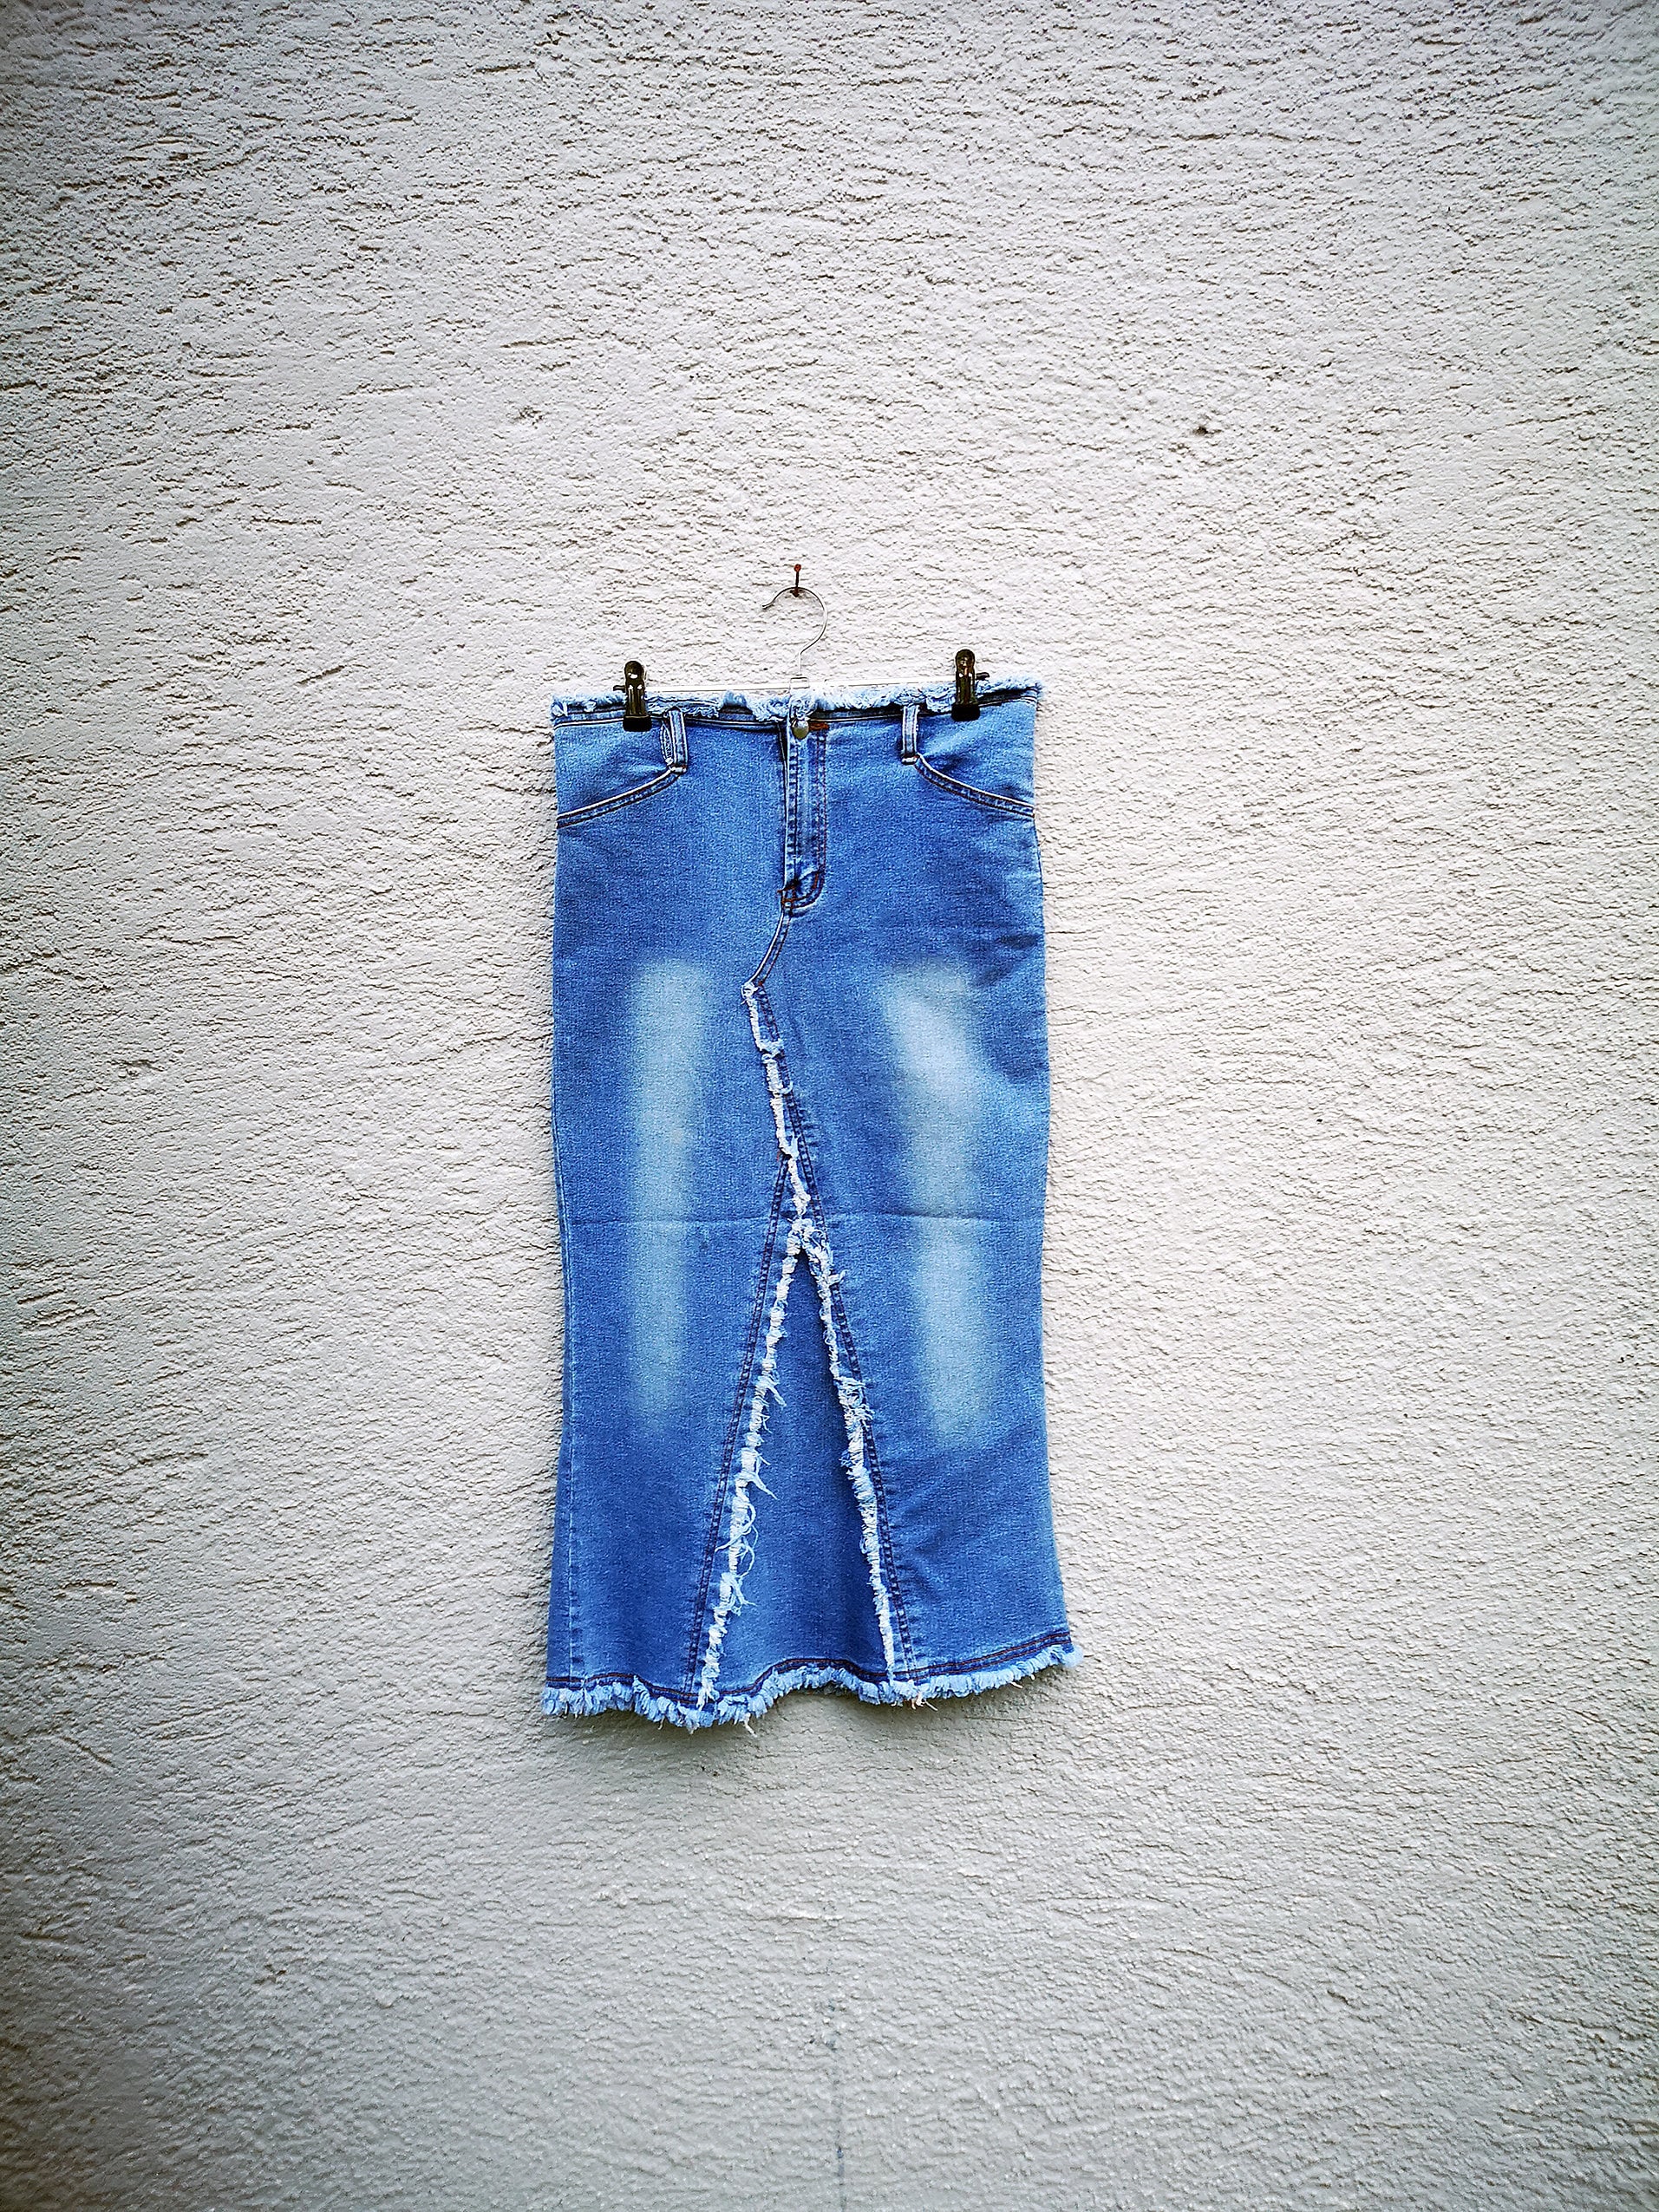 Damen 90Er Jahre Denim Bleistift Rock Hohe Taille Lang Maxi Blue Jeans Medium Preppy Style von PiccobelloVintage